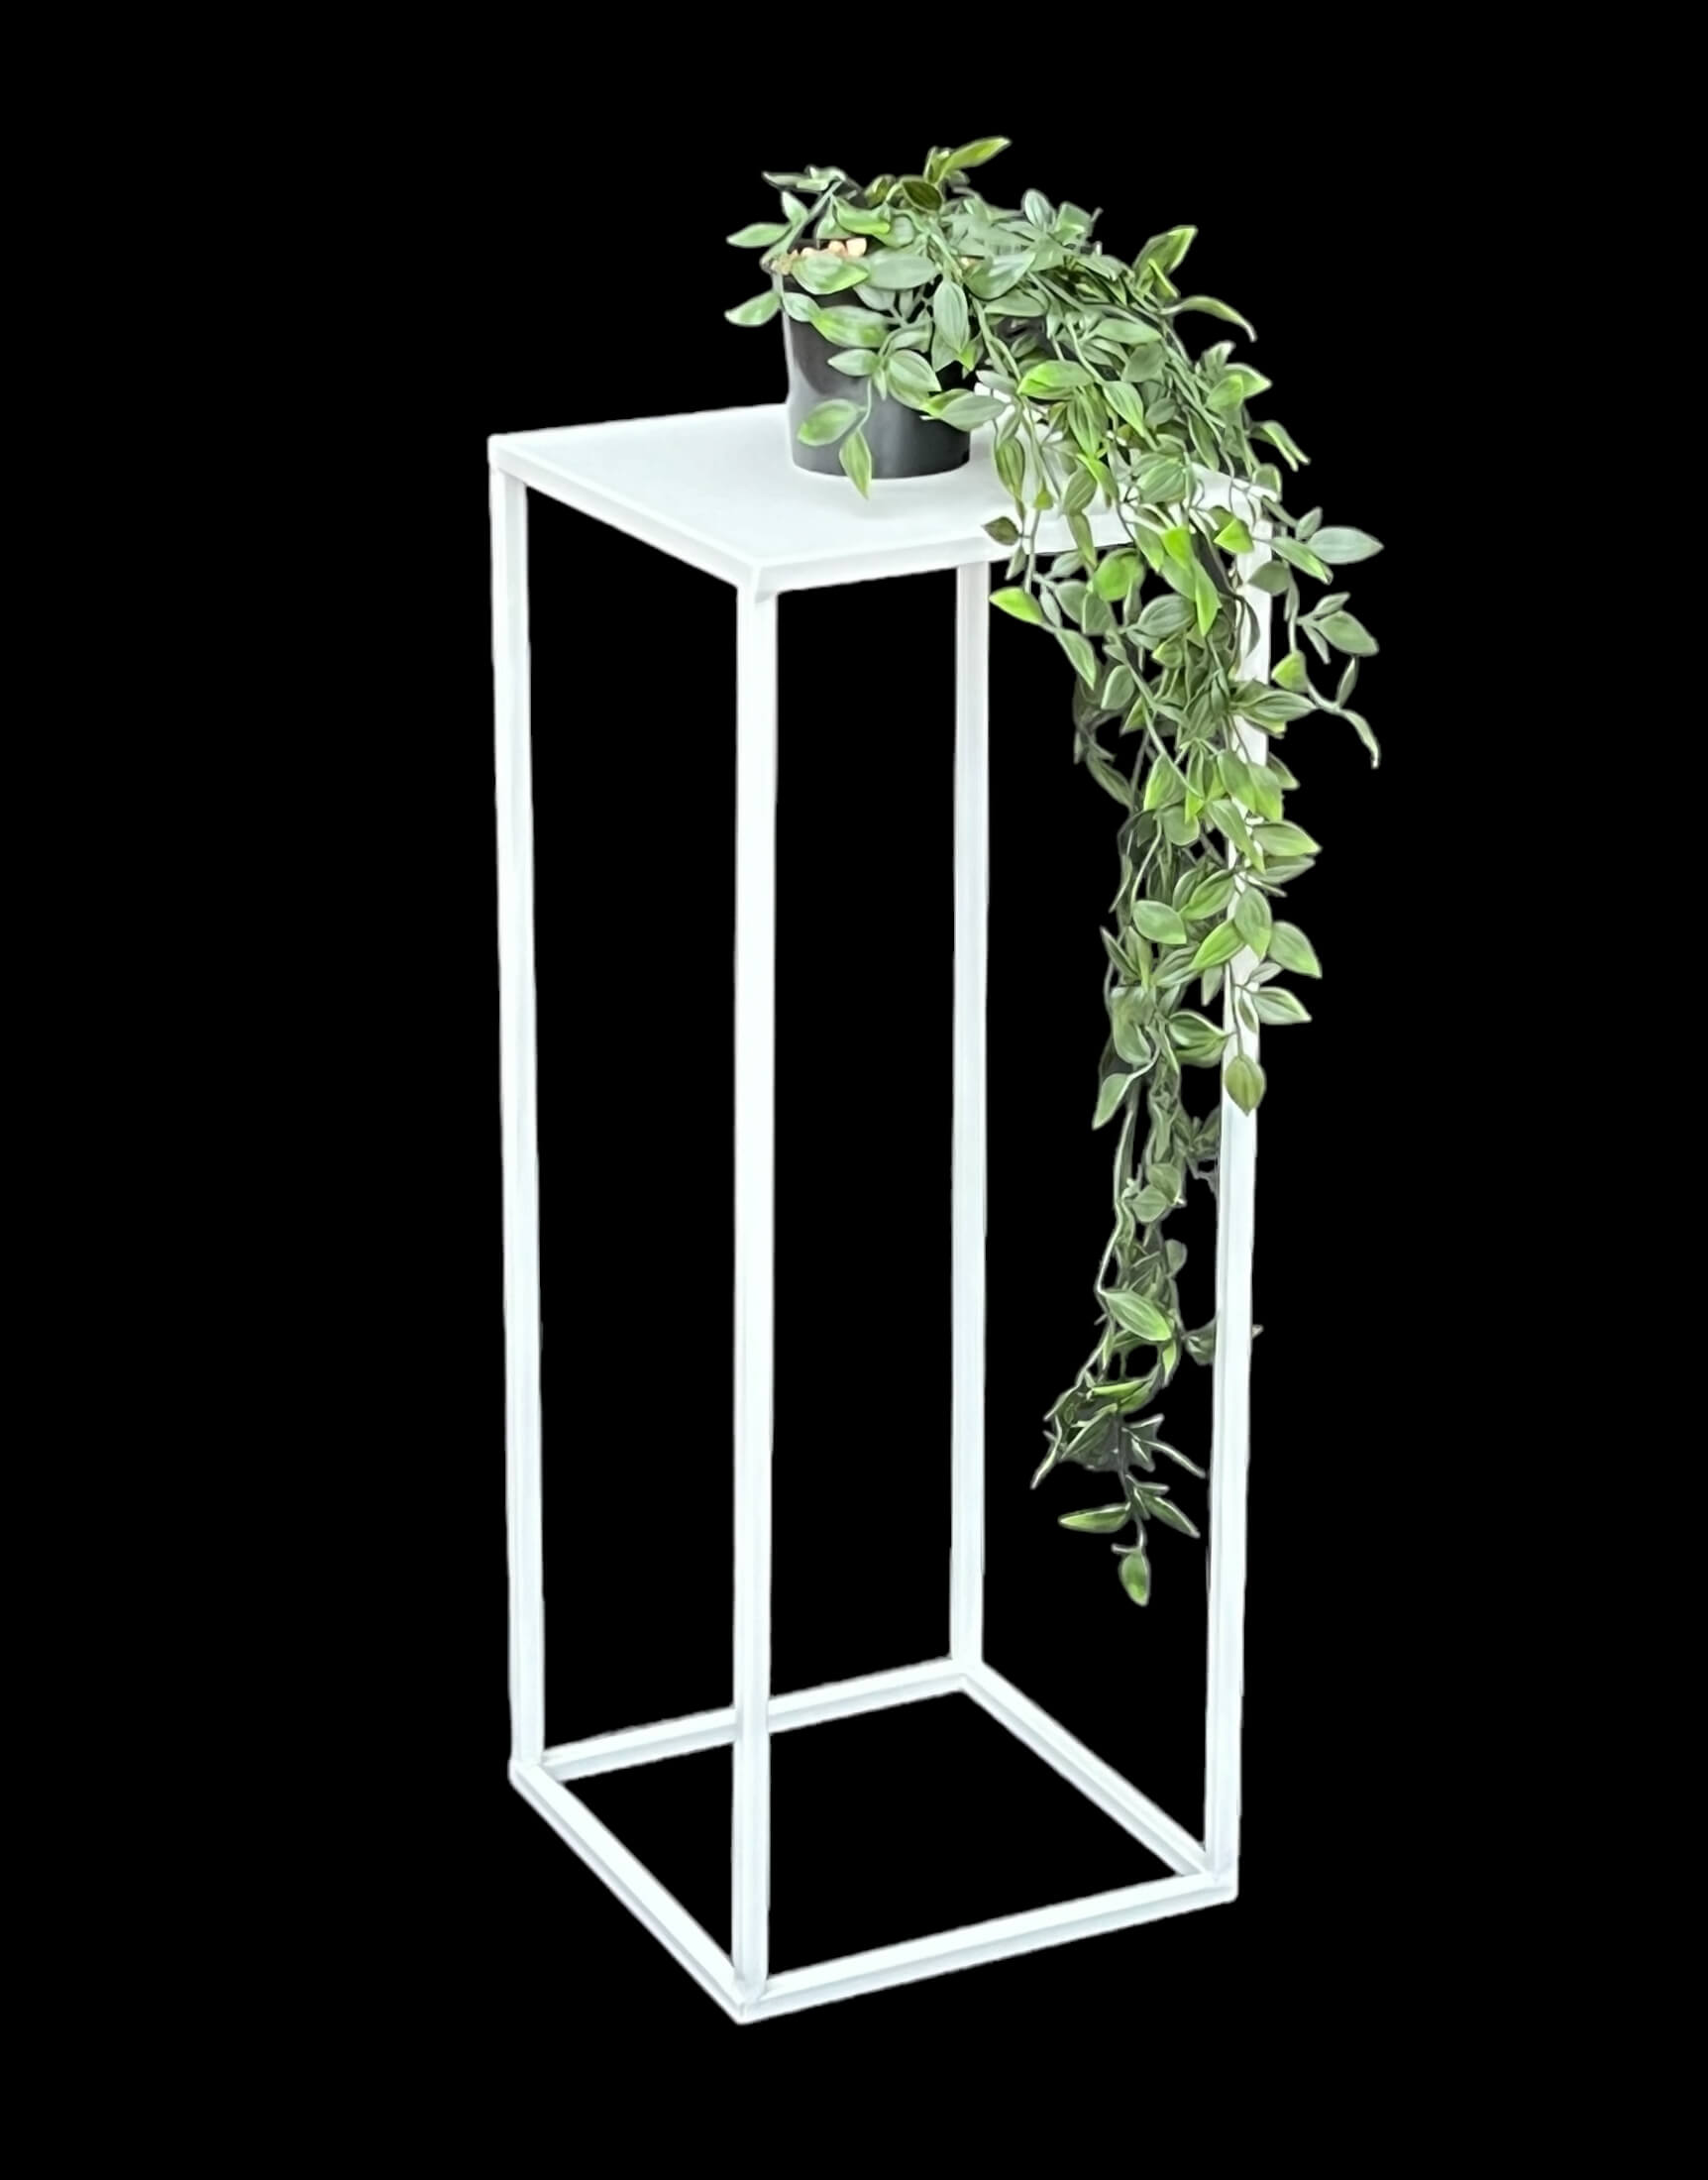 DanDiBo-Ambiente Blumenständer Pflanzenständer Modern DanDiBo 96482 cm Beistelltisch M Metall 60 Pflanzenhocker Weiß - Eckig Blumensäule Blumenhocker